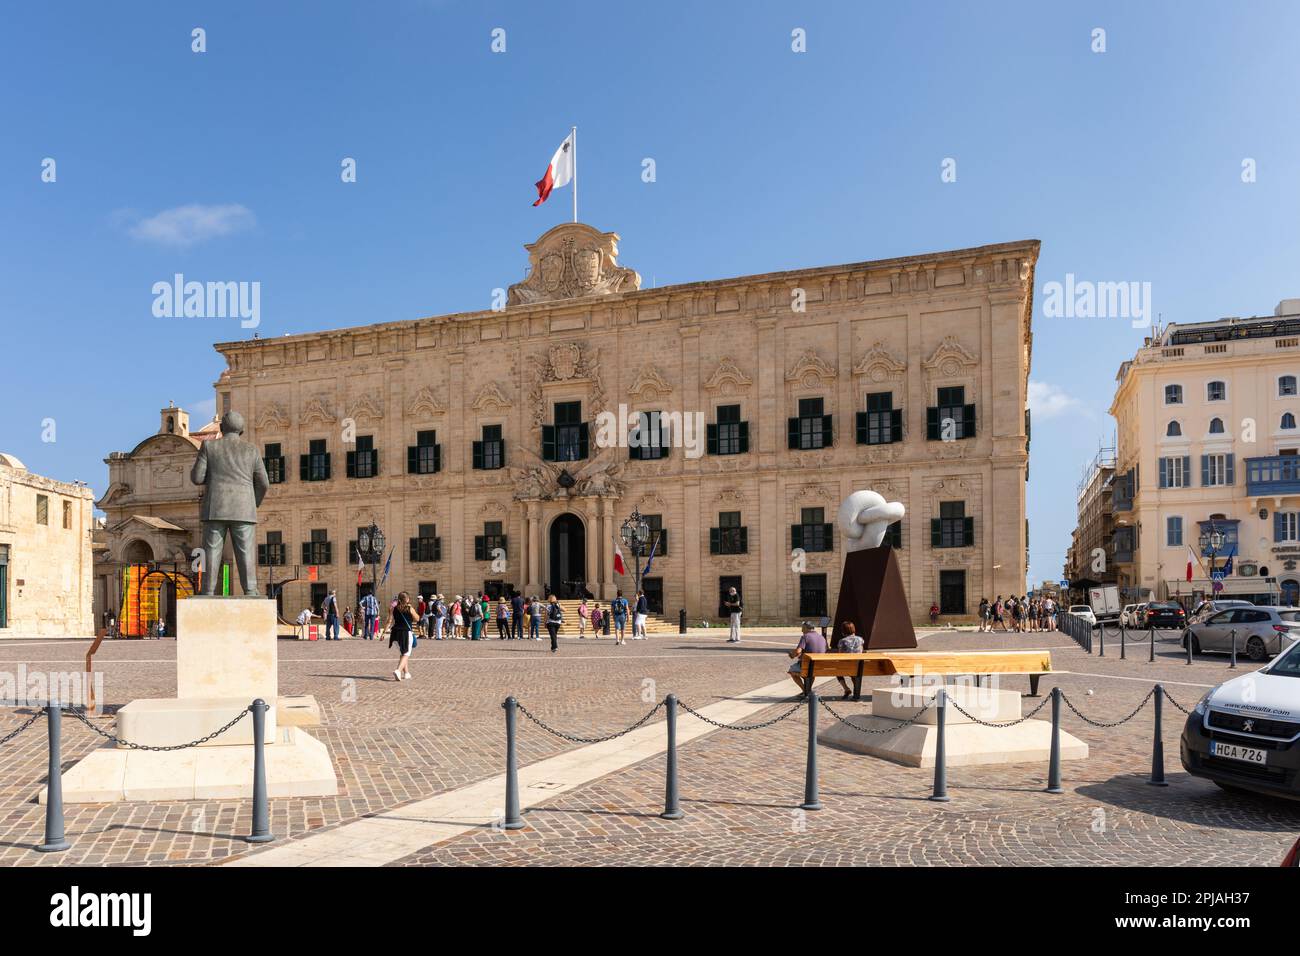 L'Auberge de Castille un bâtiment du XVIIIe siècle qui sert de Cabinet du Premier ministre, place Castille, Valette, ville de Malte, Europe Banque D'Images